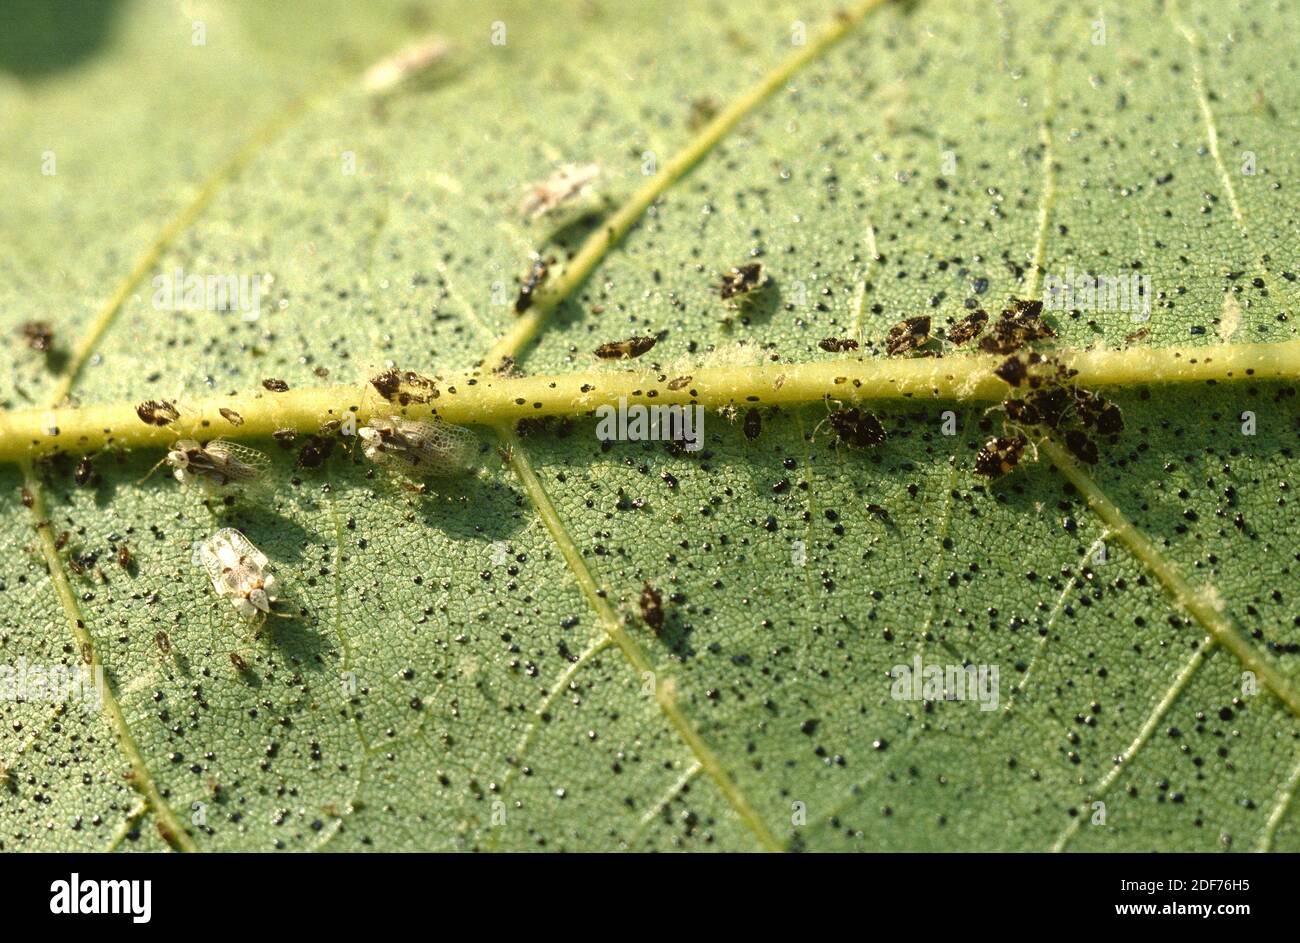 Der Maulbeerfeigenwanzen (Corythucha ciliata) ist ein hemiptera-Insekt, das sich von saft ernährt. Erwachsene und Larven. Stockfoto